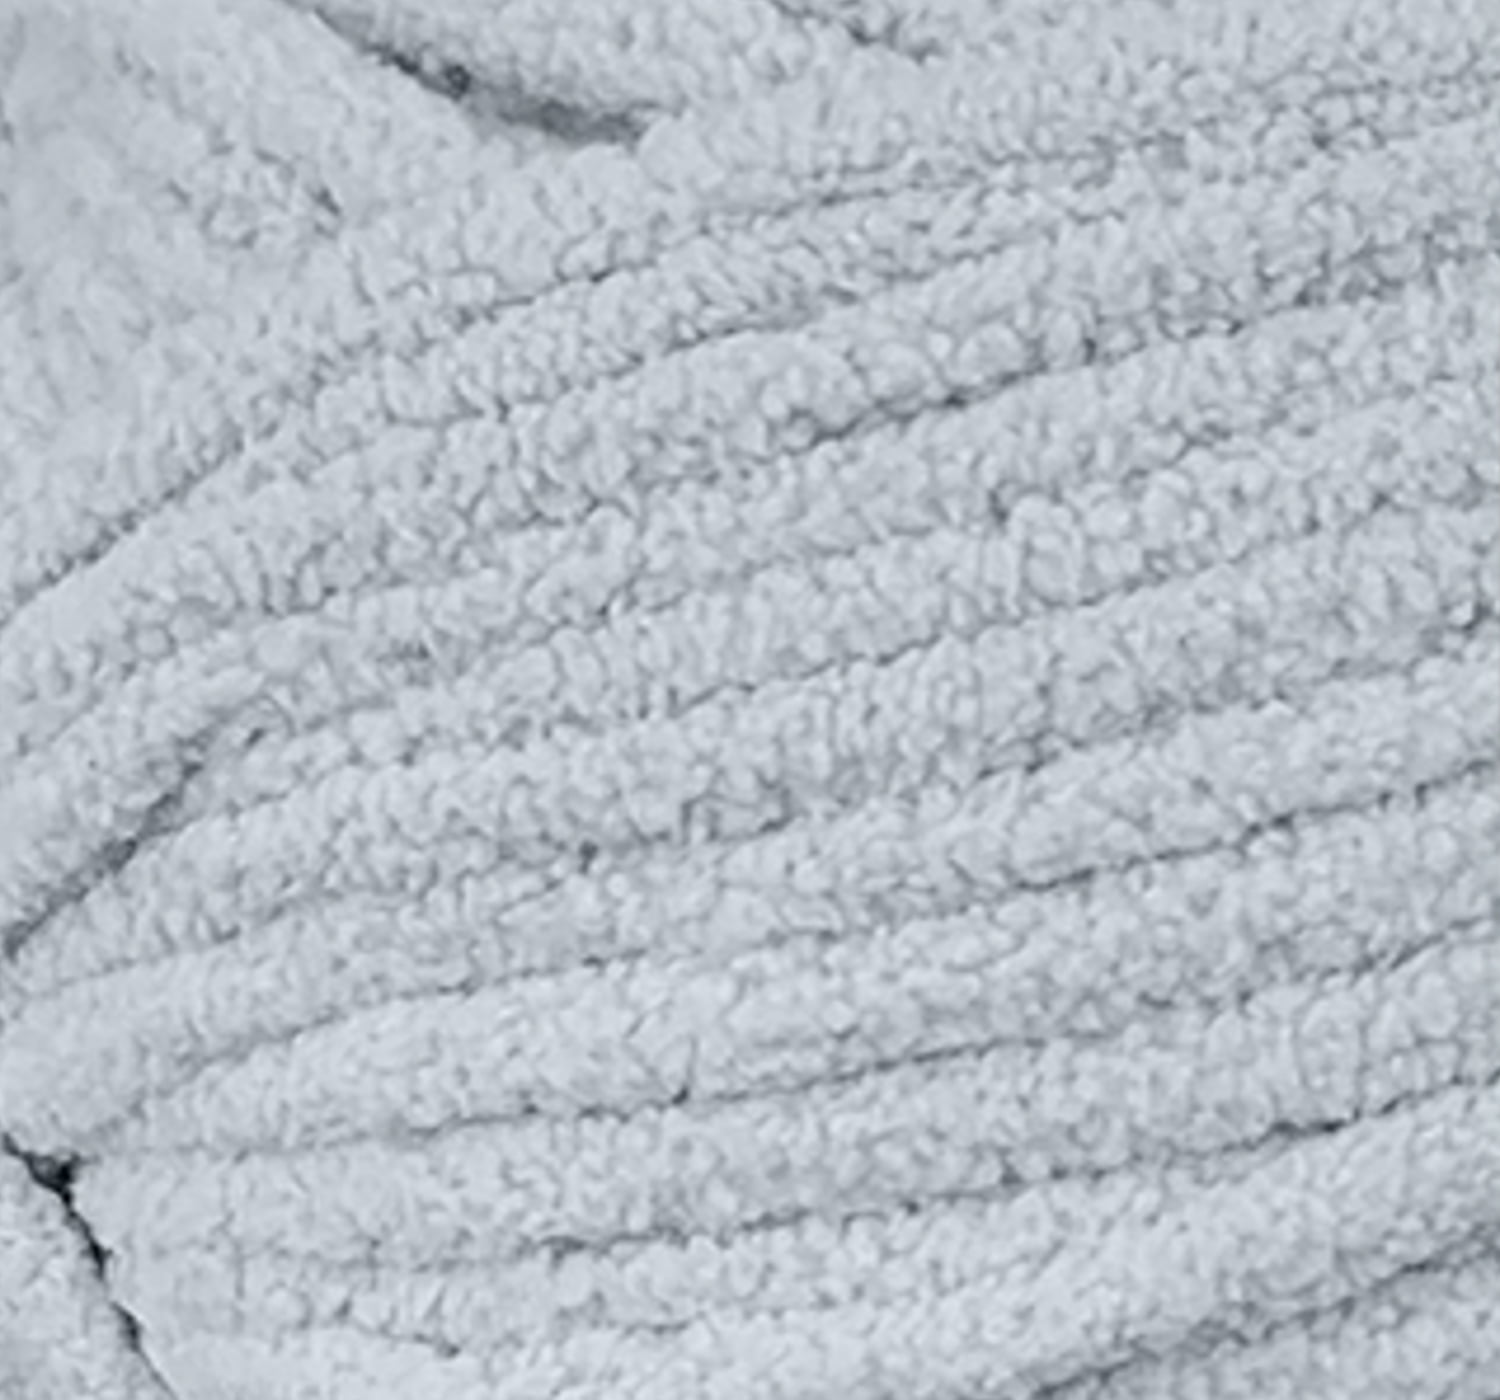 Mainstays Cozy Chenille Yarn, 220 yd, Soft Silver, 100% Polyester